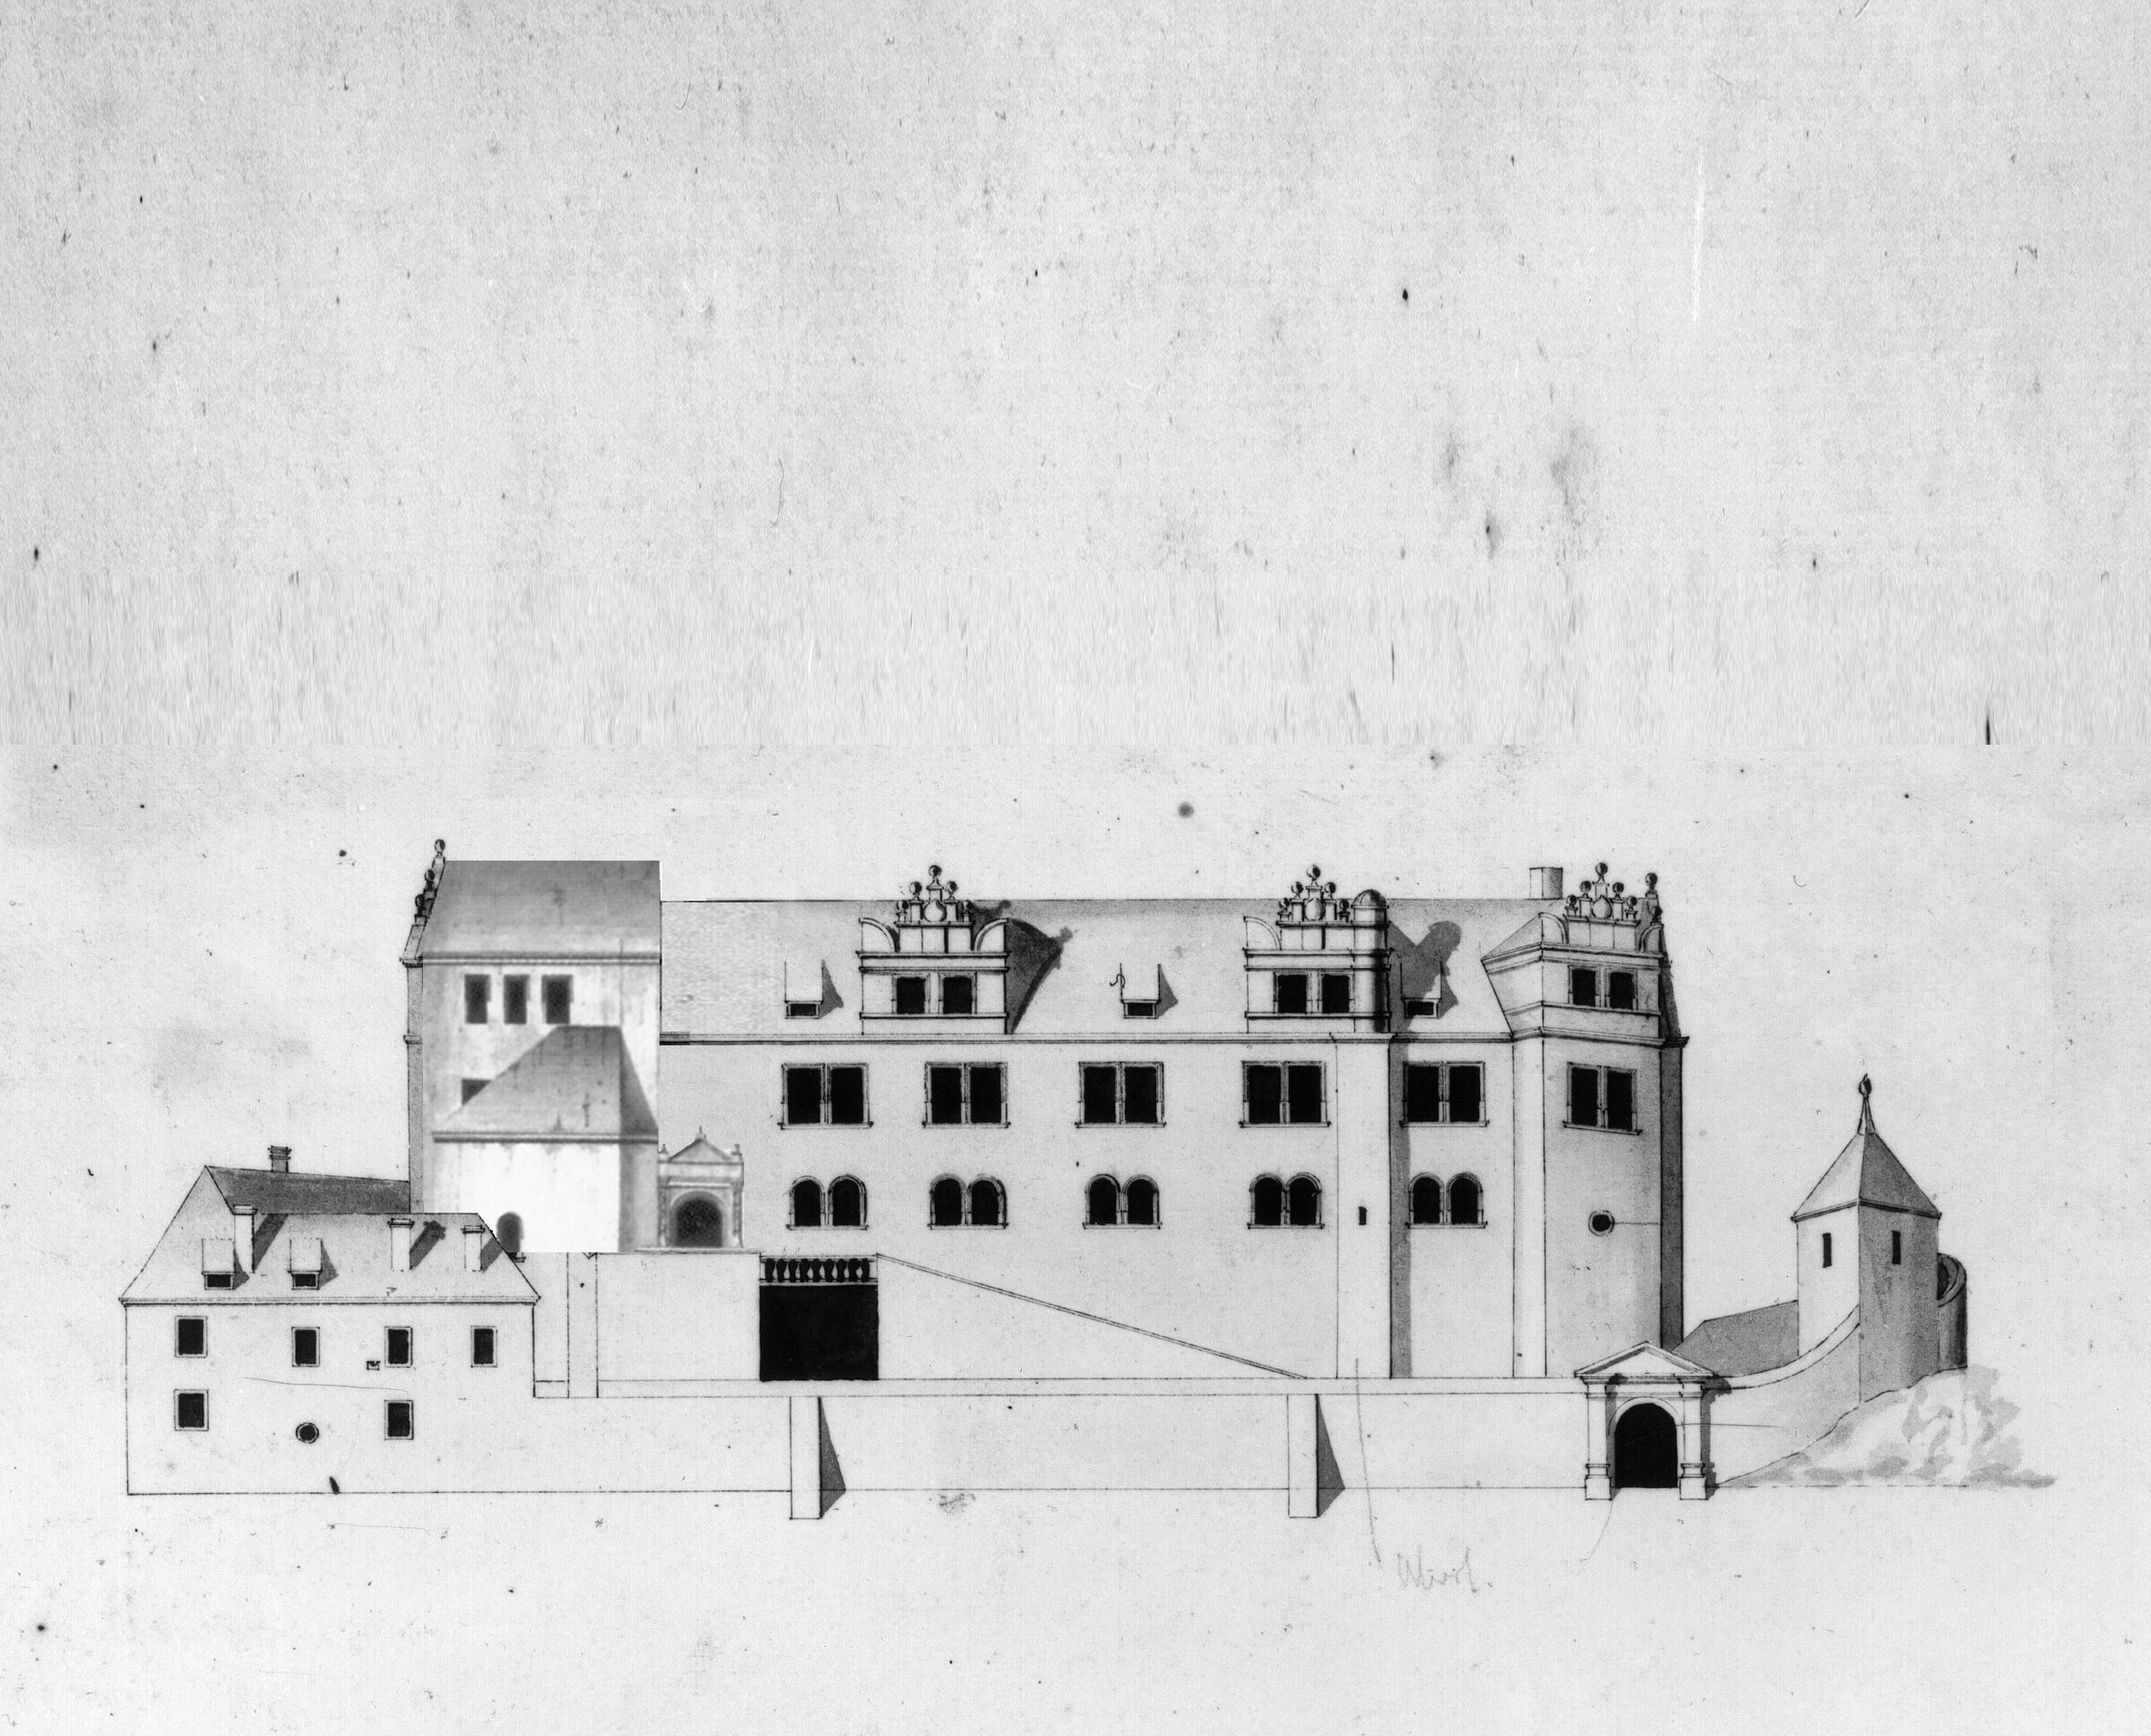 Foto in Vergrößerungsansicht öffnen: Plan mit der Ansicht der Fassade vor dem Umbau 1772 mit Reitertreppe, Renaissancegiebeln und klarer Gliederung der Fensterfront